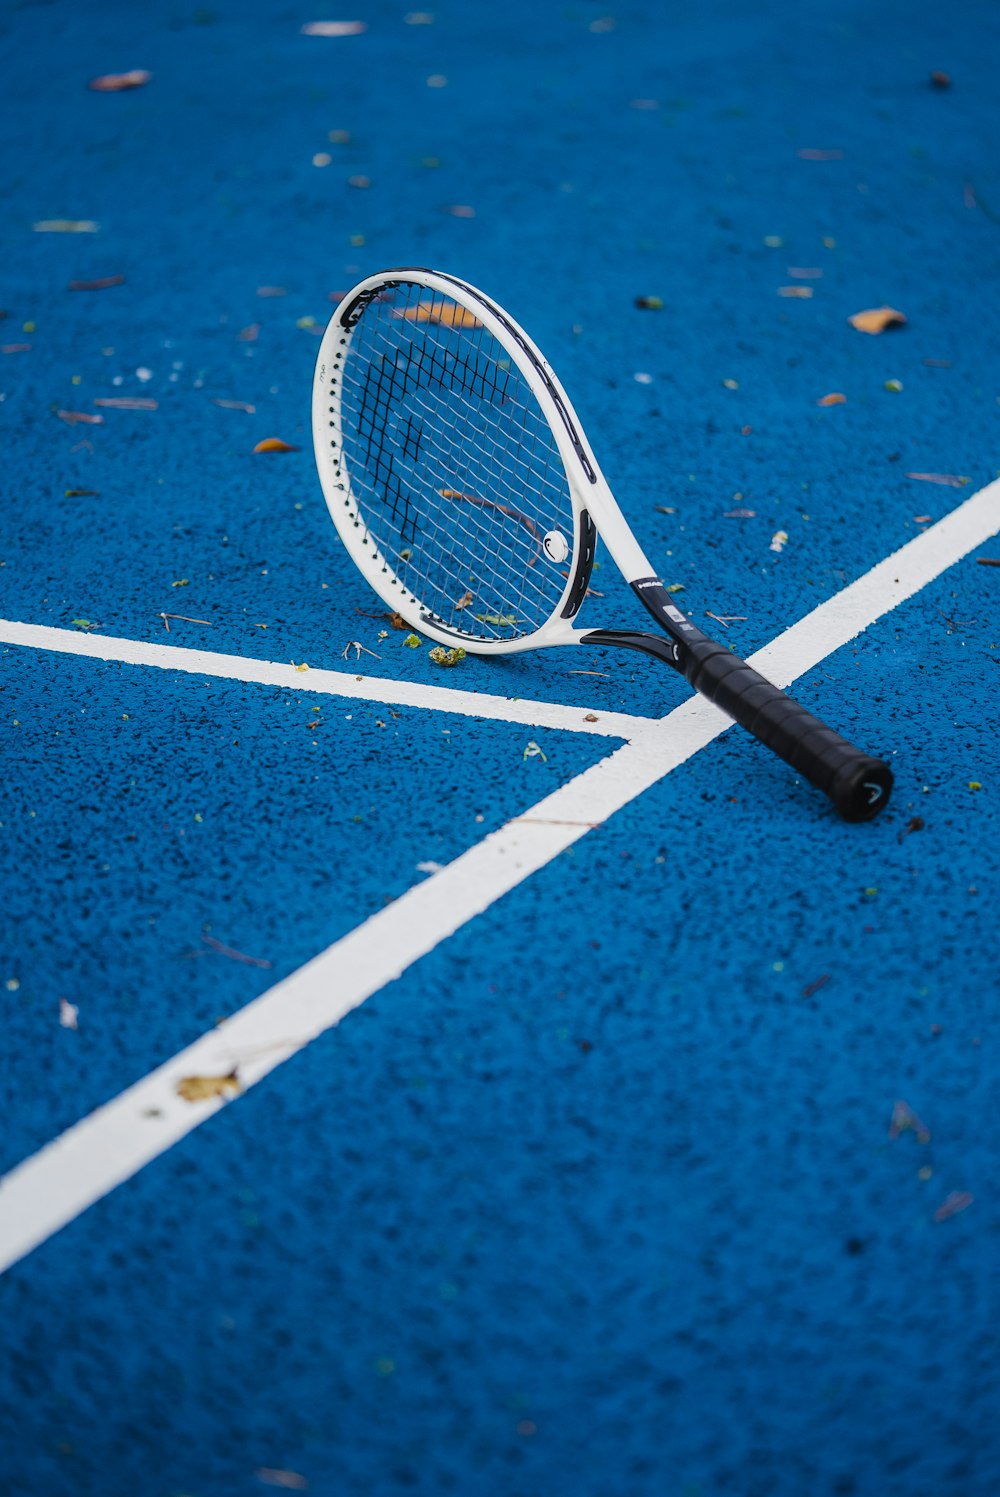 una racchetta da tennis posata su un campo da tennis blu